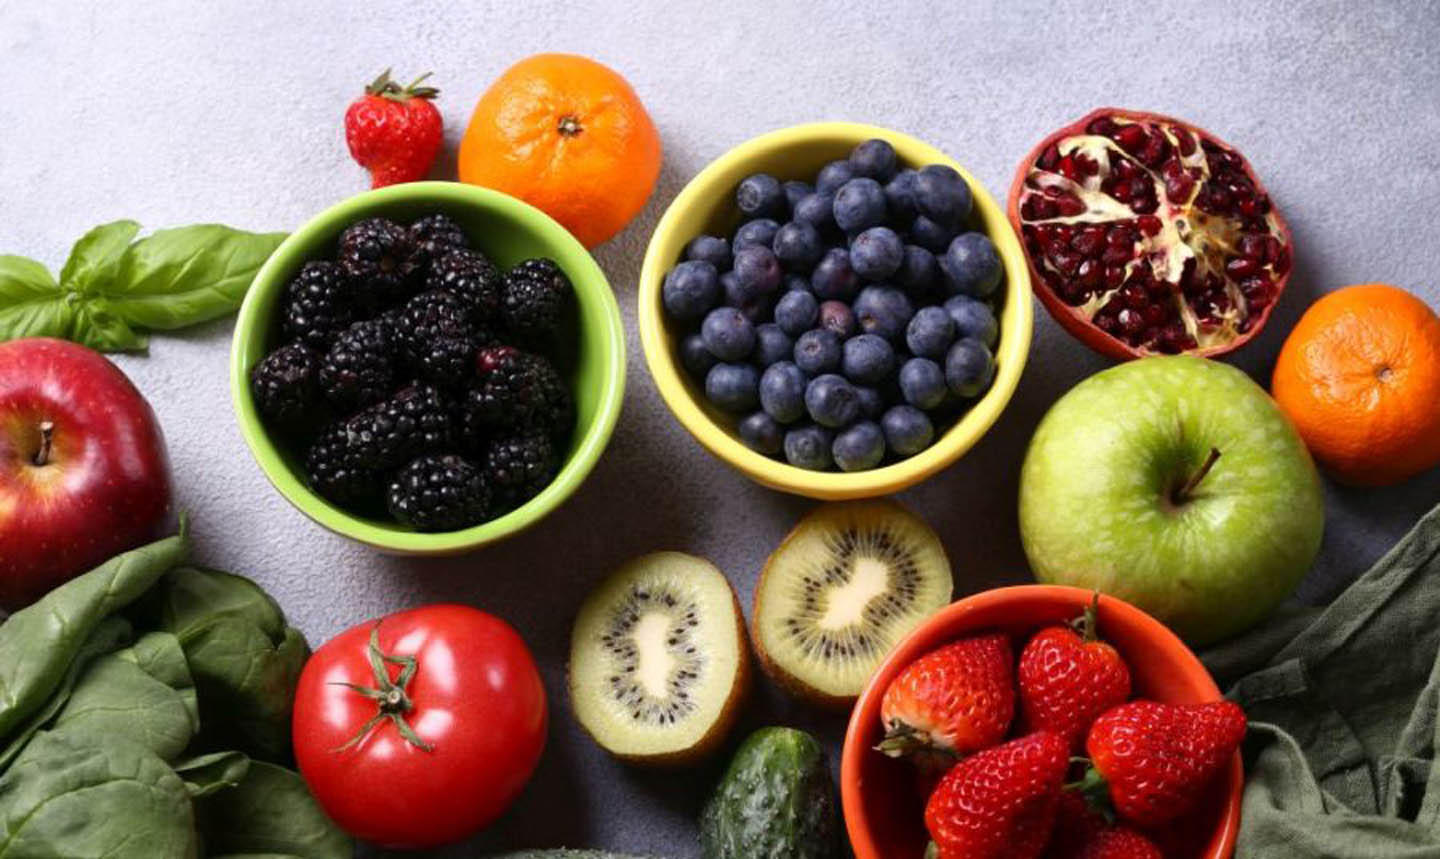 Obst und Gemüse
Frische und Qualität genießen bei unseren Obst- und Gemüseprodukten den höchsten Stellenwert, daher sind sie auch Chefsache und werden regelmäßigen Kontrollen unterzogen.